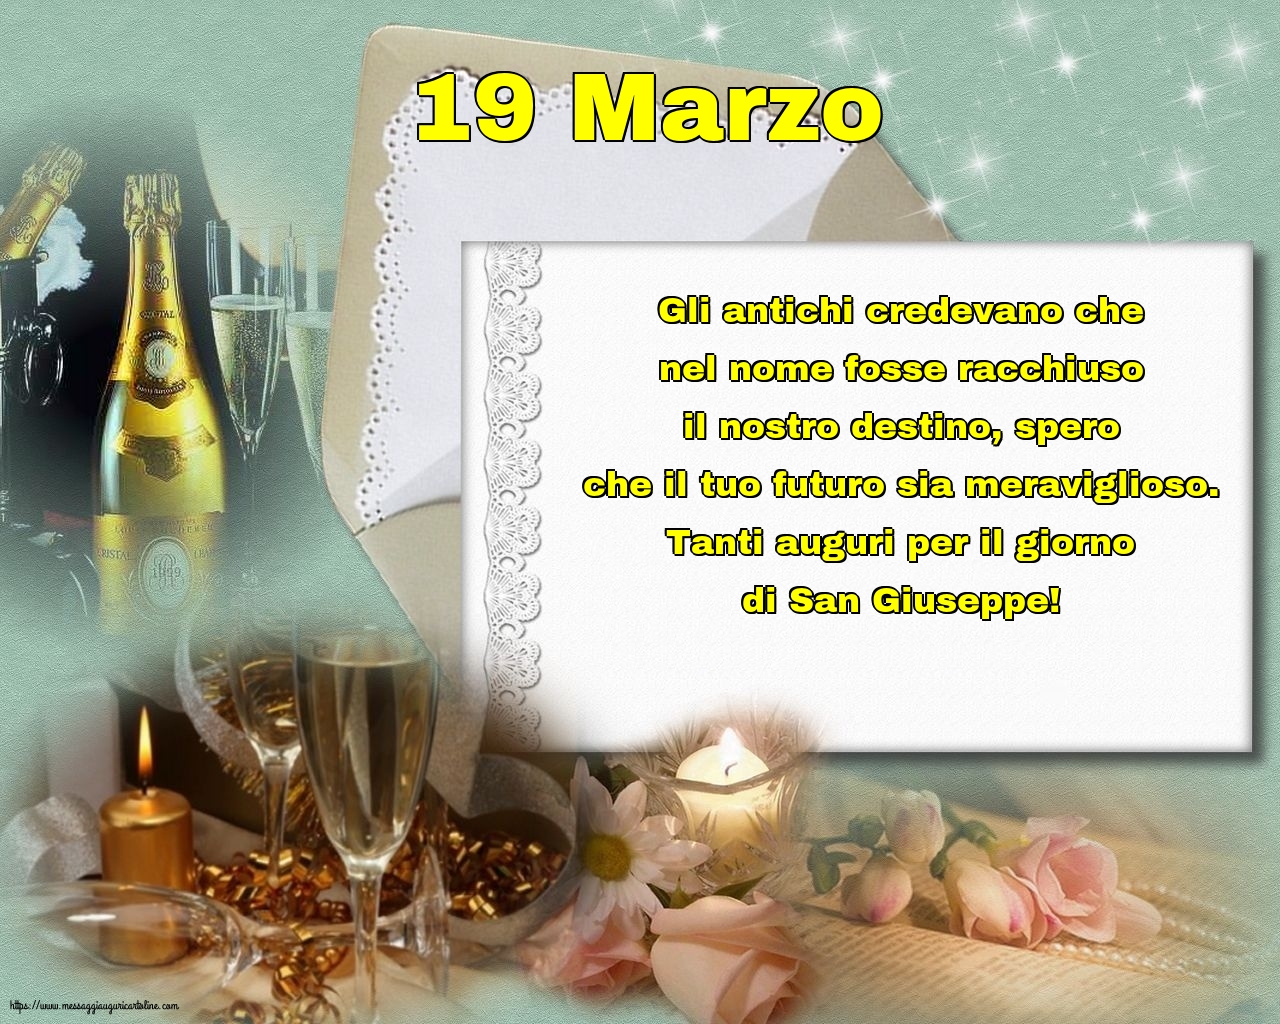 19 Marzo - 19 Marzo - Tanti auguri per il giorno di San Giuseppe!